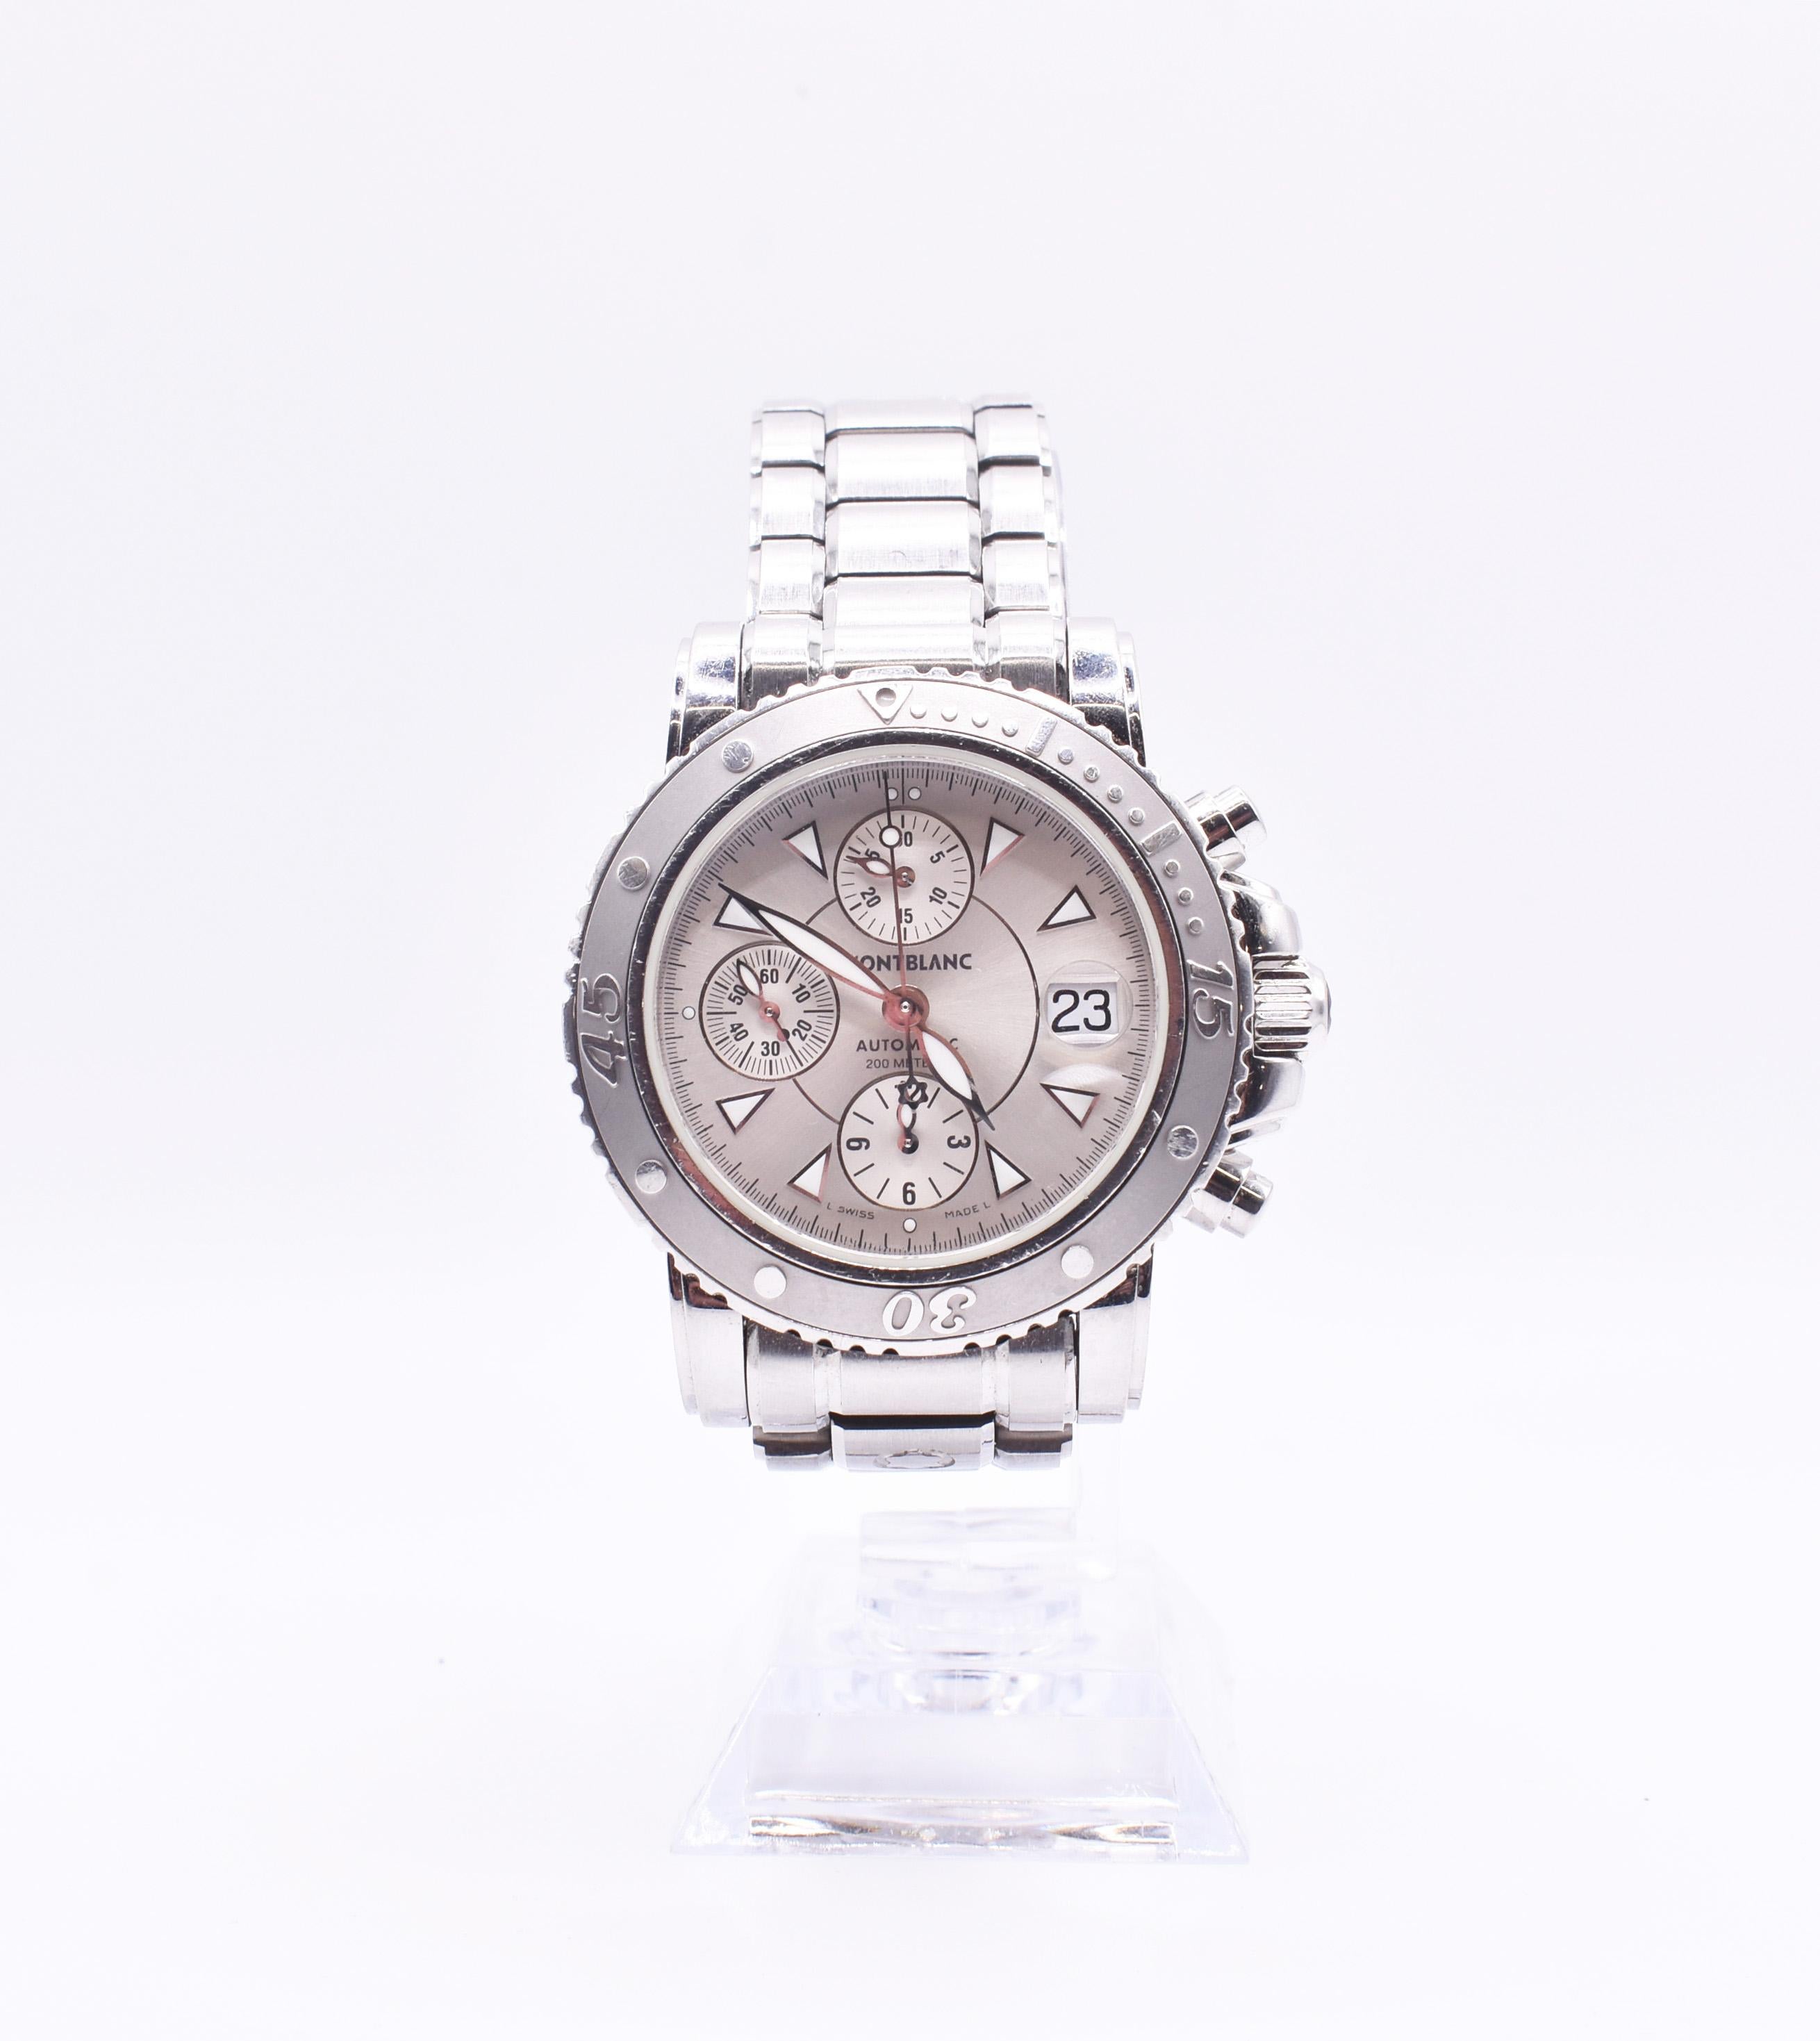 Montblanc Meisterstück Sport Chronograph Automatic Ref. 7034

En 1997, Montblanc dévoile sa première collection de montres. La marque a voulu que le style de ces montres reflète l'esthétique des instruments d'écriture de Montblanc, à savoir le